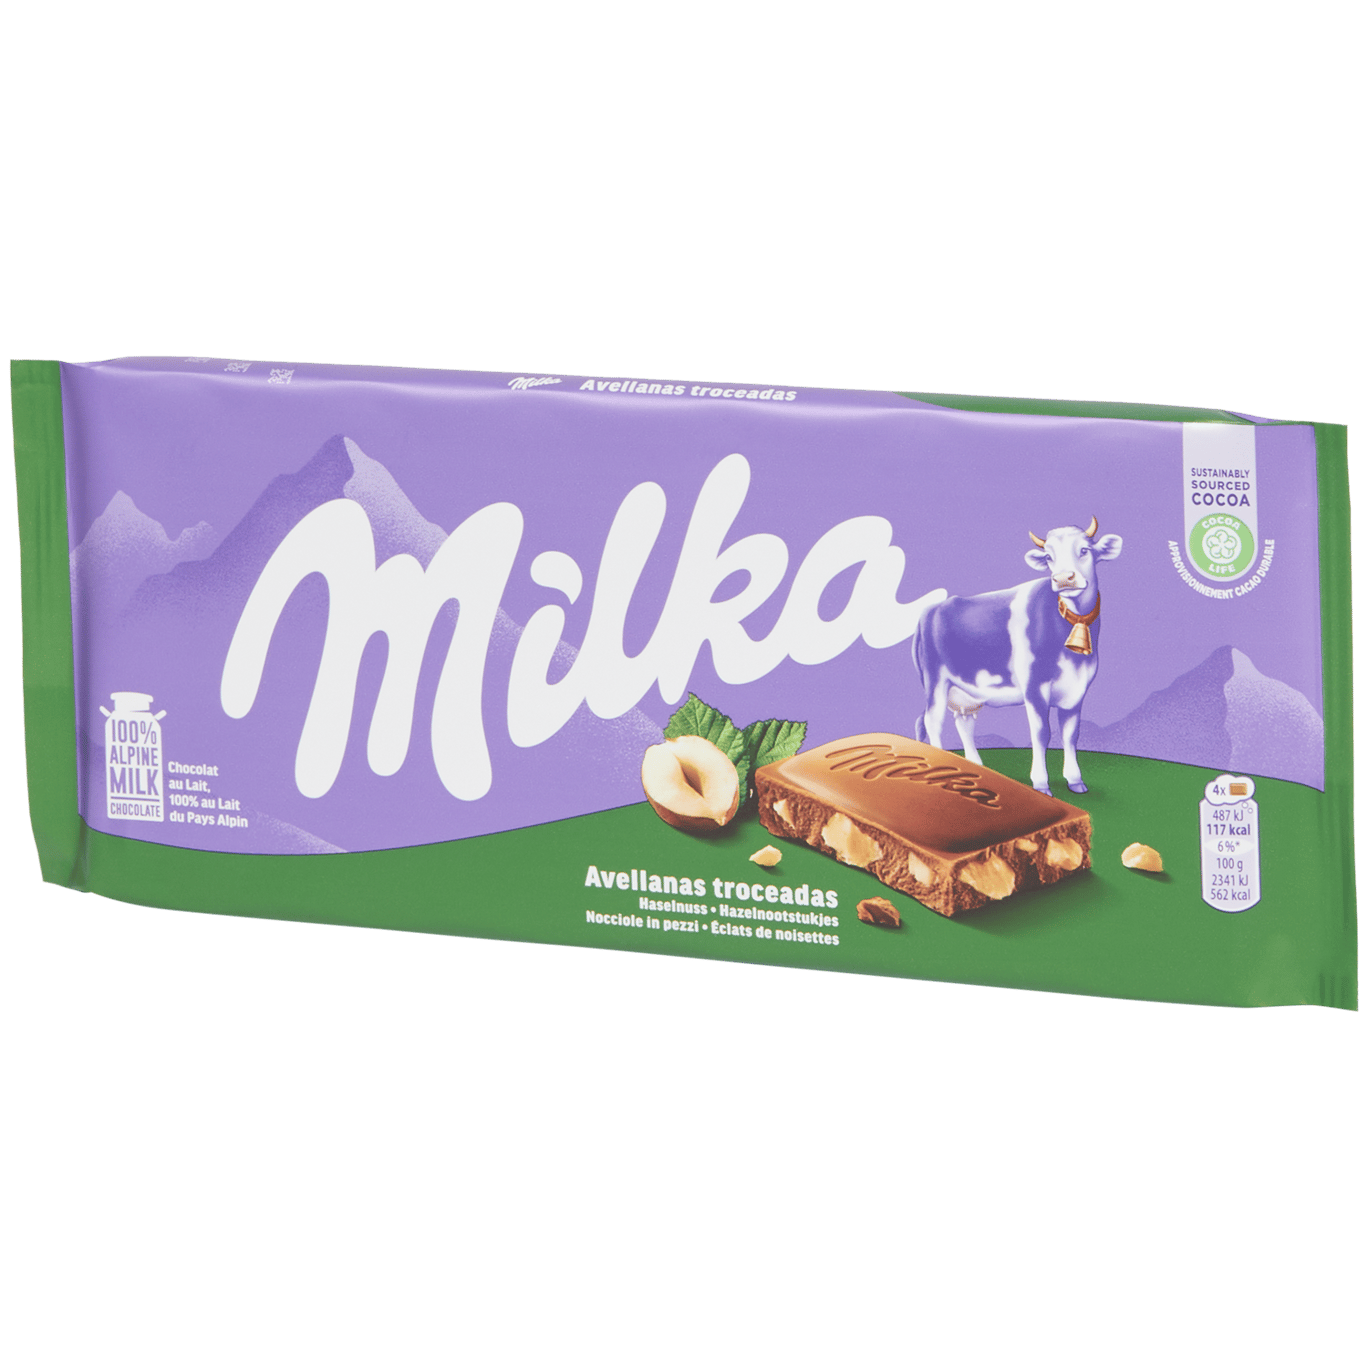 Tablette de chocolat Milka Noisette